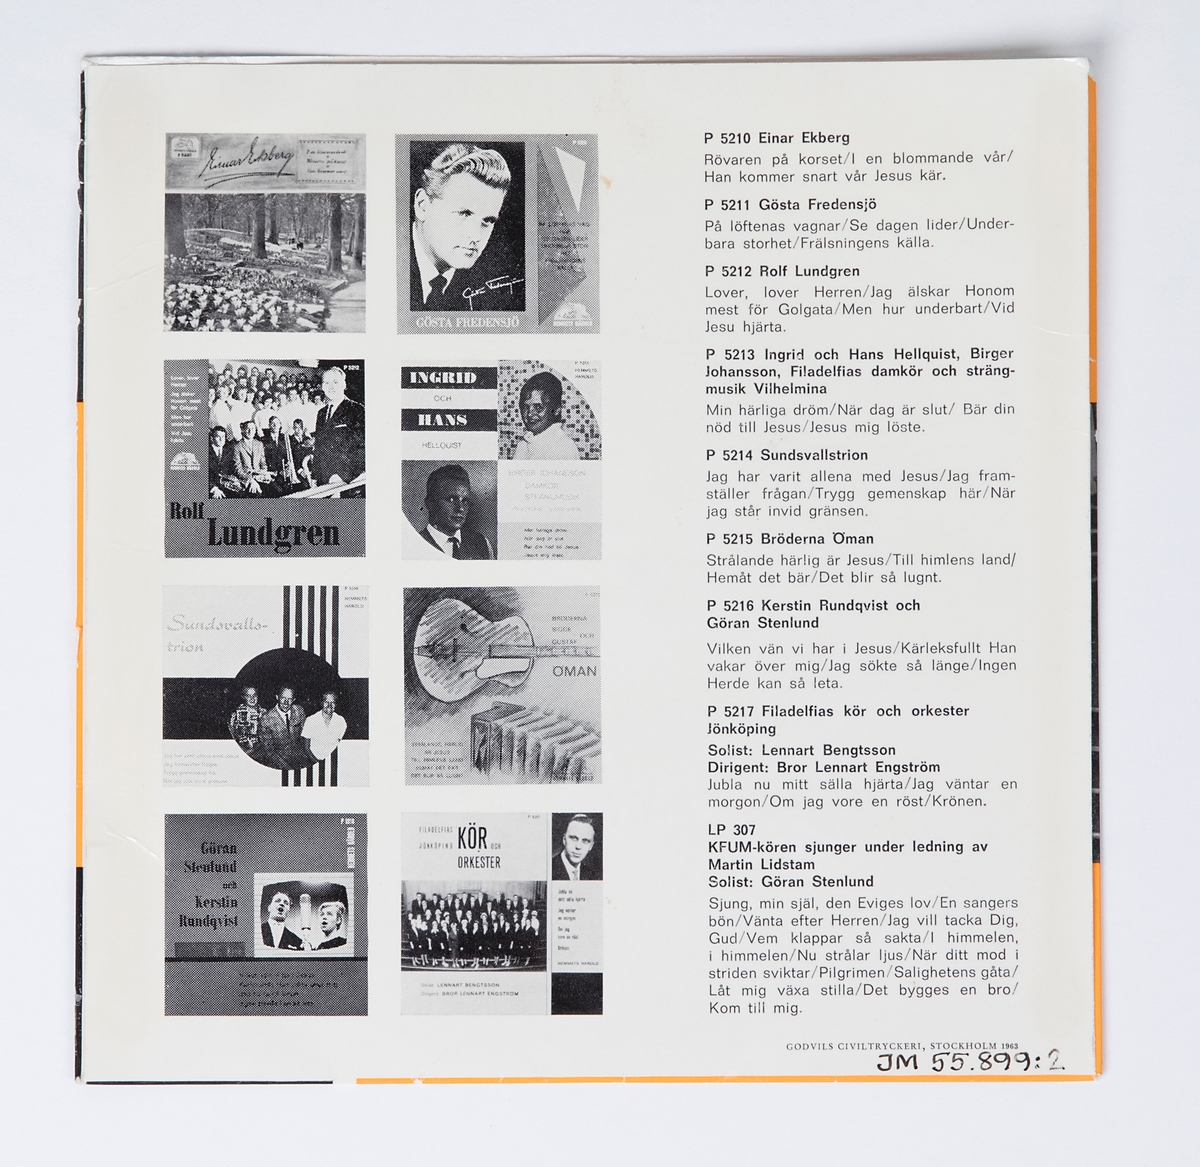 EP-skiva av svart vinyl med lila pappersetikett med silverfärgad tryckt text, omslag av blankt papper. Omslaget är tryckt i färgerna orange, svart och vitt. På framsidan finns svart tryckt text, ett svart-vitt fotografi av sångkören och ett svart-vitt porträttfotografi av en man. Baksidan innehåller en förteckning och fotografier över skivbolagets senaste skivor.

JM 55899:1, EP-skiva, Hememts Härold, P5217, EP-45

1. Jubla nu mitt snälla hjärta (Emil Gustafson)
2. Jag väntar en morgon (Egon Zandelin)
Sång av Filadelfias kör och orkester, Jönköping
Solist: Lennart Bengtsson
Dir.: Bror-Lennar Engström

1. Om jag vore en röst (Fr. eng. Ivar Lindestad - J. Calvin Bushey)
Solist: Lennart Bengtsson
2. Hell Jesus utav Betlehem! (E. Perronet - James Ellor)
Sång av Filadelfias kör och orkester, Jönköping
Dir.: Bror-Lennart Engström

Text runt pappersetiketten:
"Alla rättigheter förbehållas producenten resp. ägaren till det inspelade verket * Offentligt utförande, radiosändning och kopiering av denna skiva utan auktorisation förbjudes"

JM 55899:2, Omslag
"GODVILS CIVILTRYCKERI, Stockholm 1963"